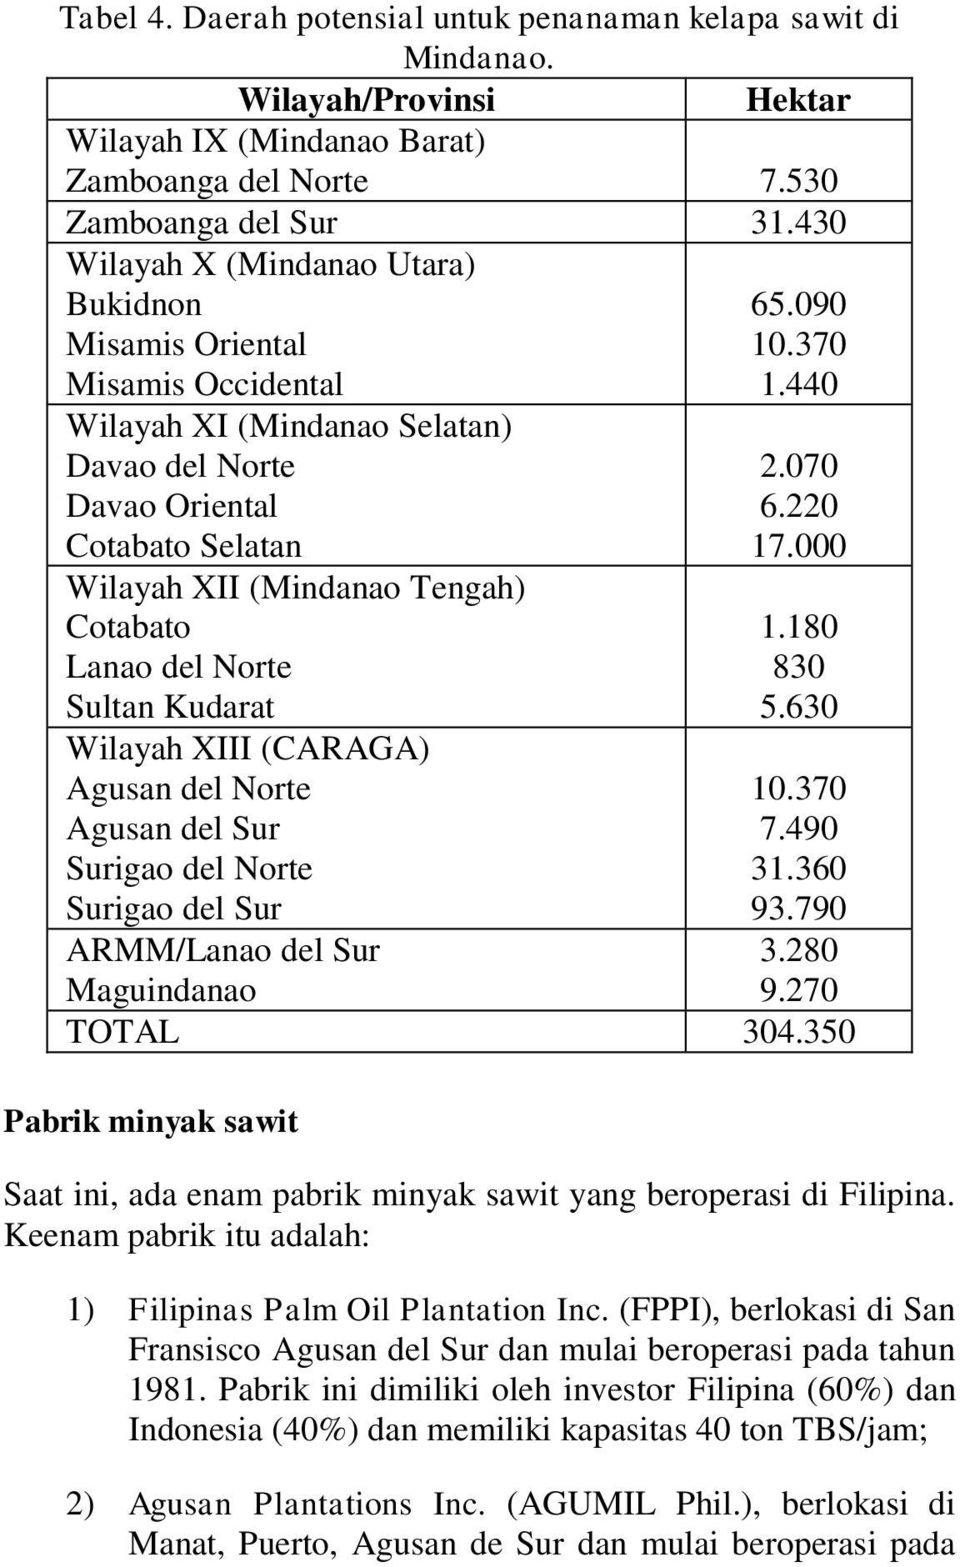 del Norte Sultan Kudarat Wilayah XIII (CARAGA) Agusan del Norte Agusan del Sur Surigao del Norte Surigao del Sur 65.090 10.370 1.440 2.070 6.220 17.000 1.180 830 5.630 10.370 7.490 31.360 93.790 3.